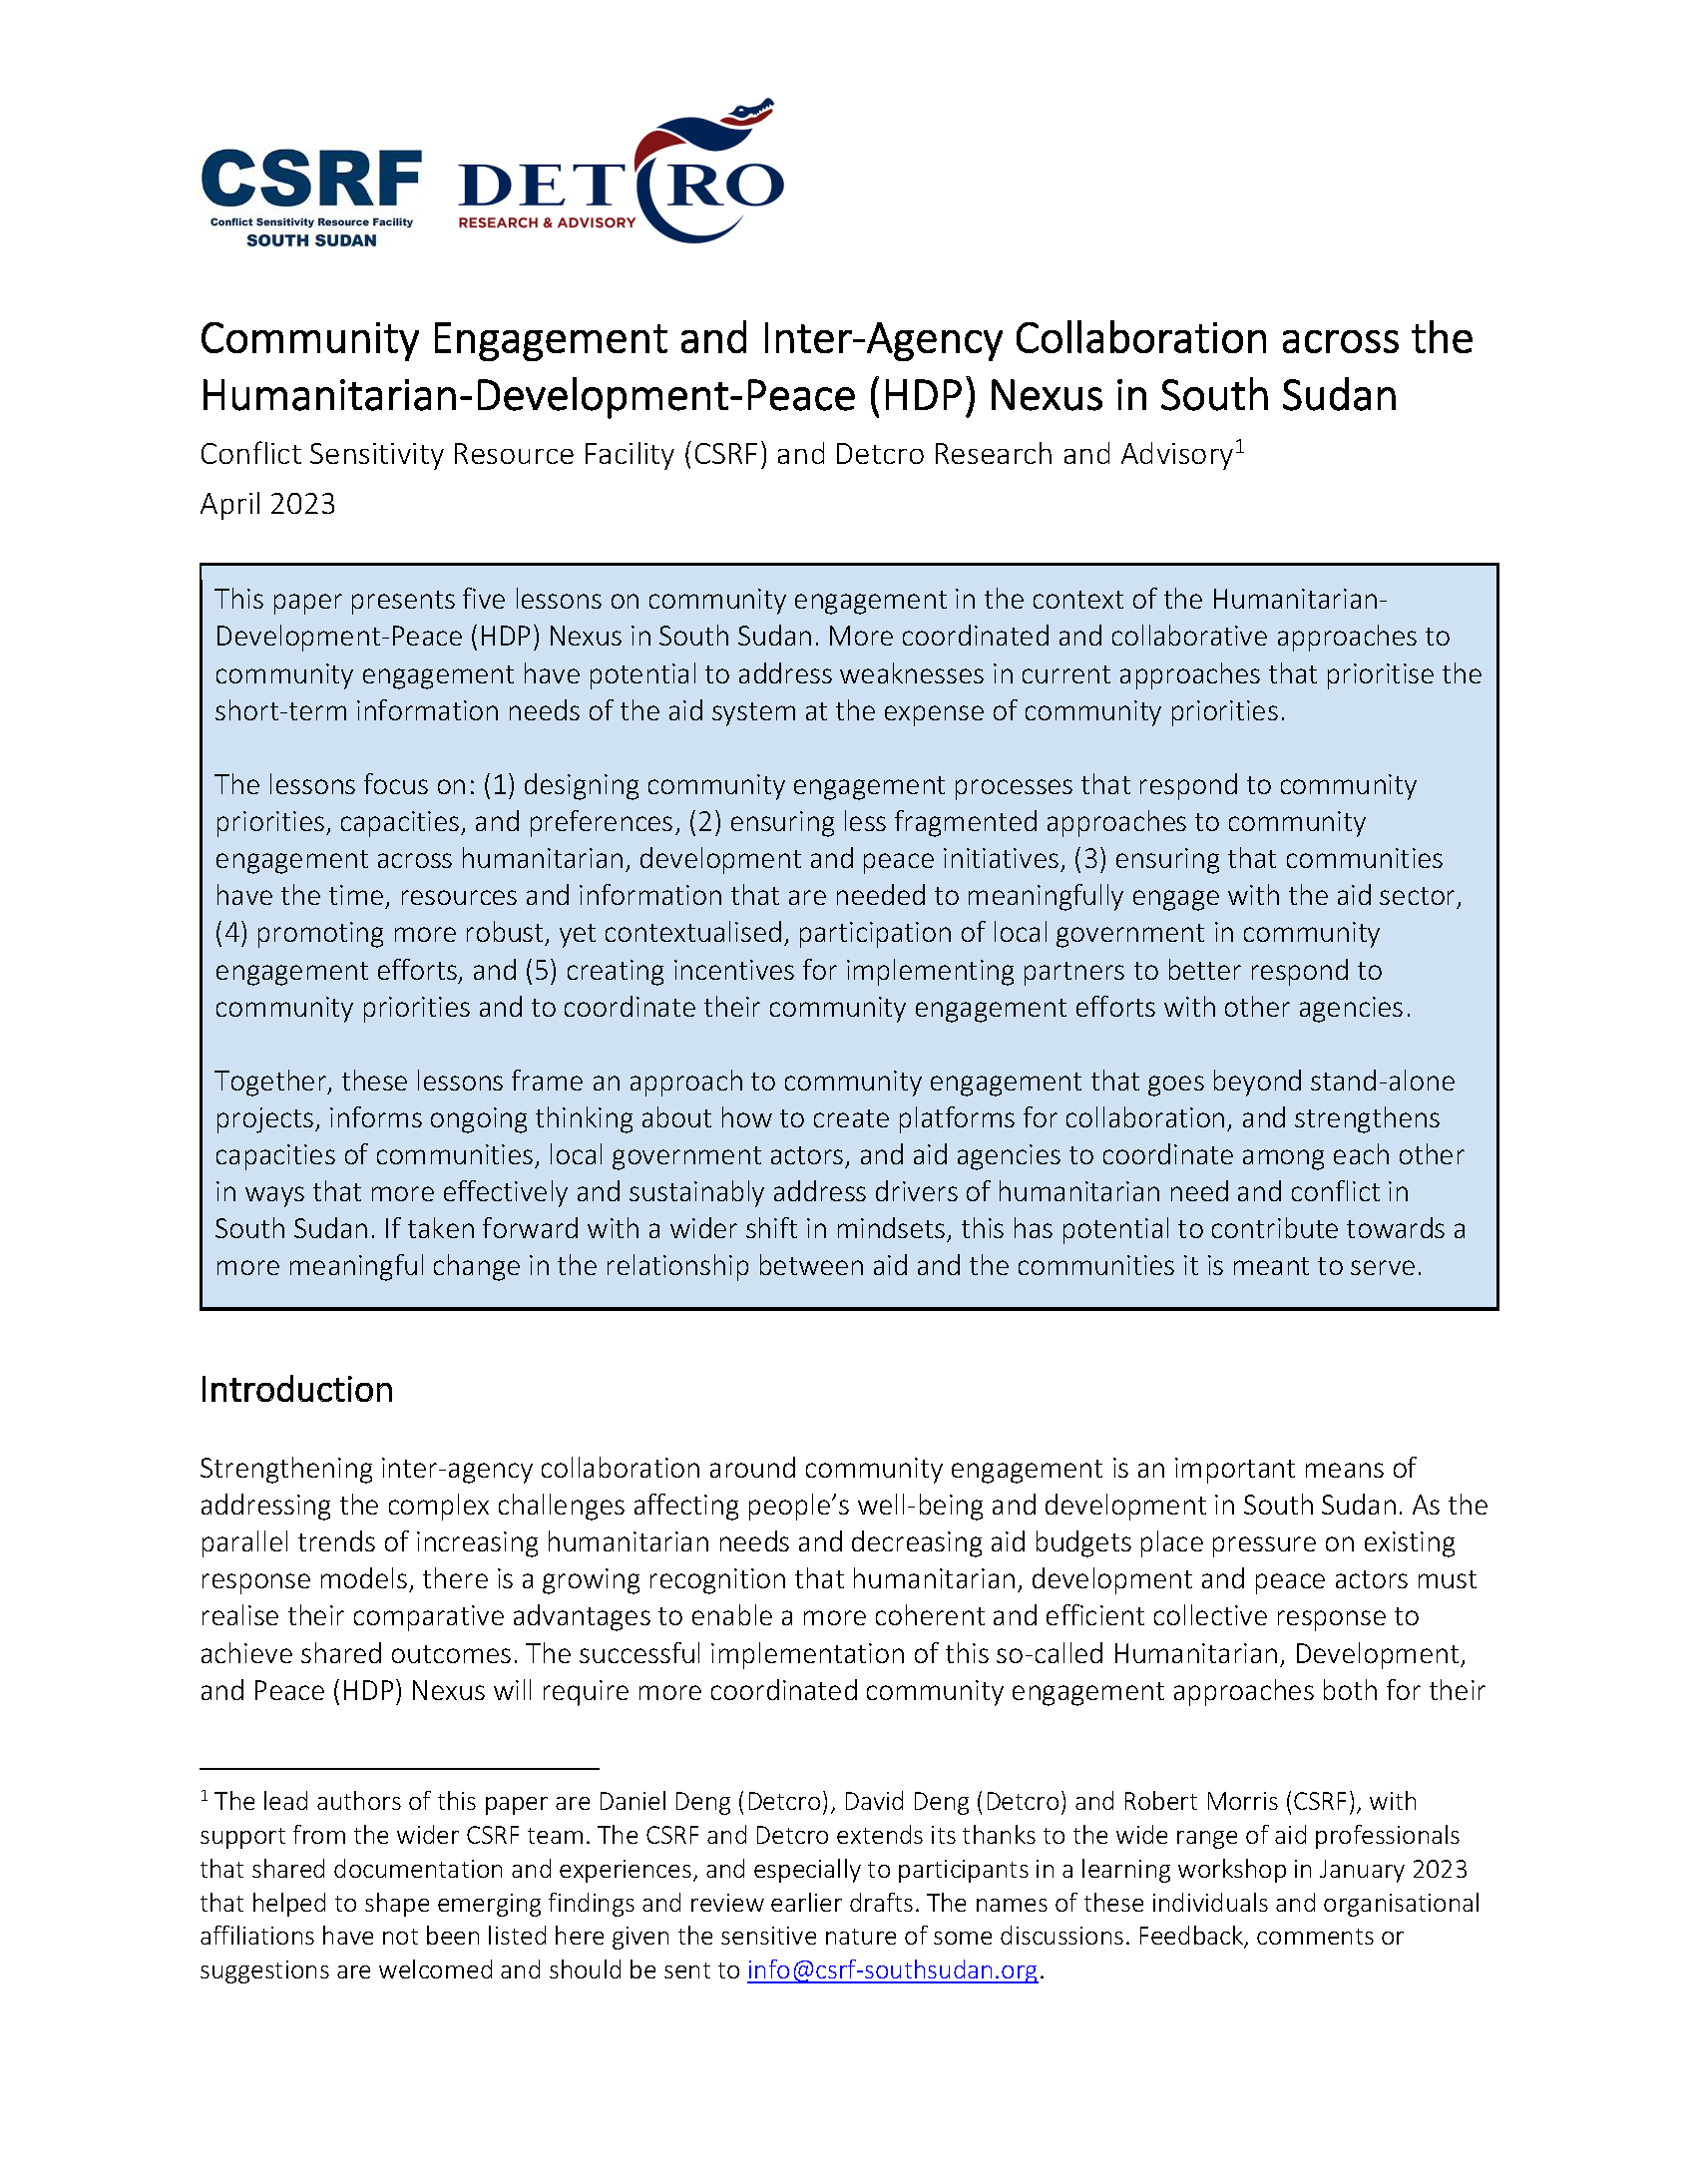 Page de couverture pour l'engagement communautaire et la collaboration inter-agences dans le cadre du lien entre l'humanitaire, le développement et la paix au Soudan du Sud